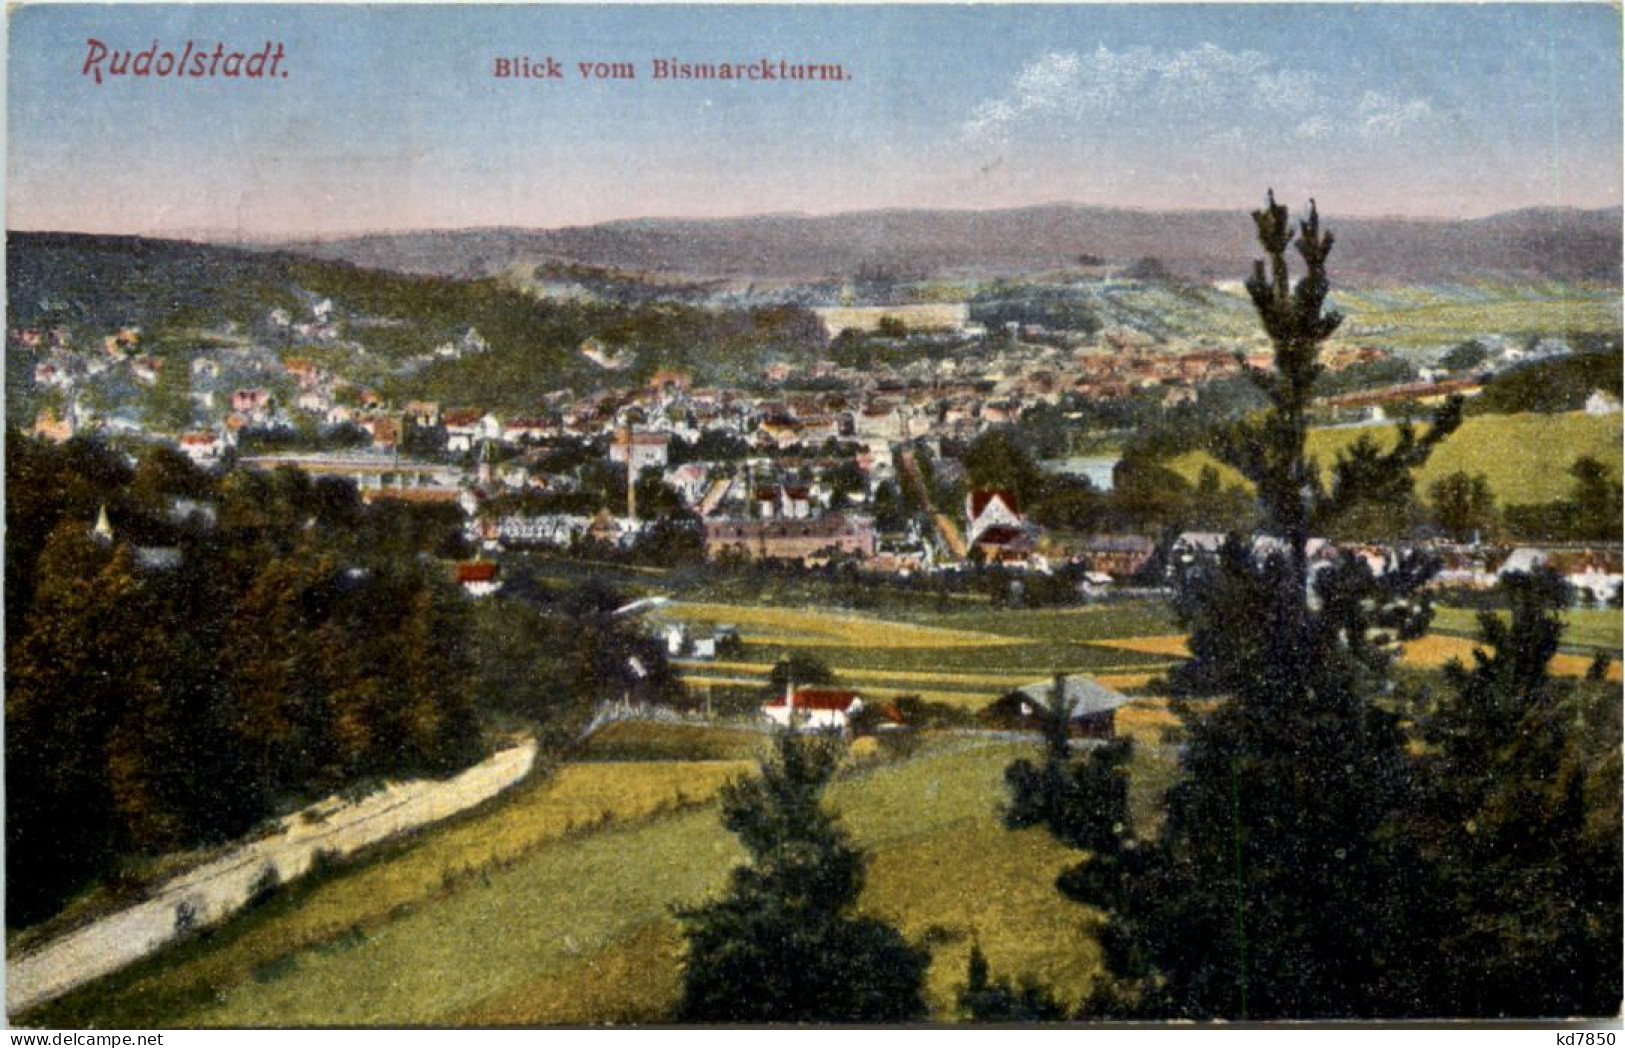 Rudolstadt - Rudolstadt